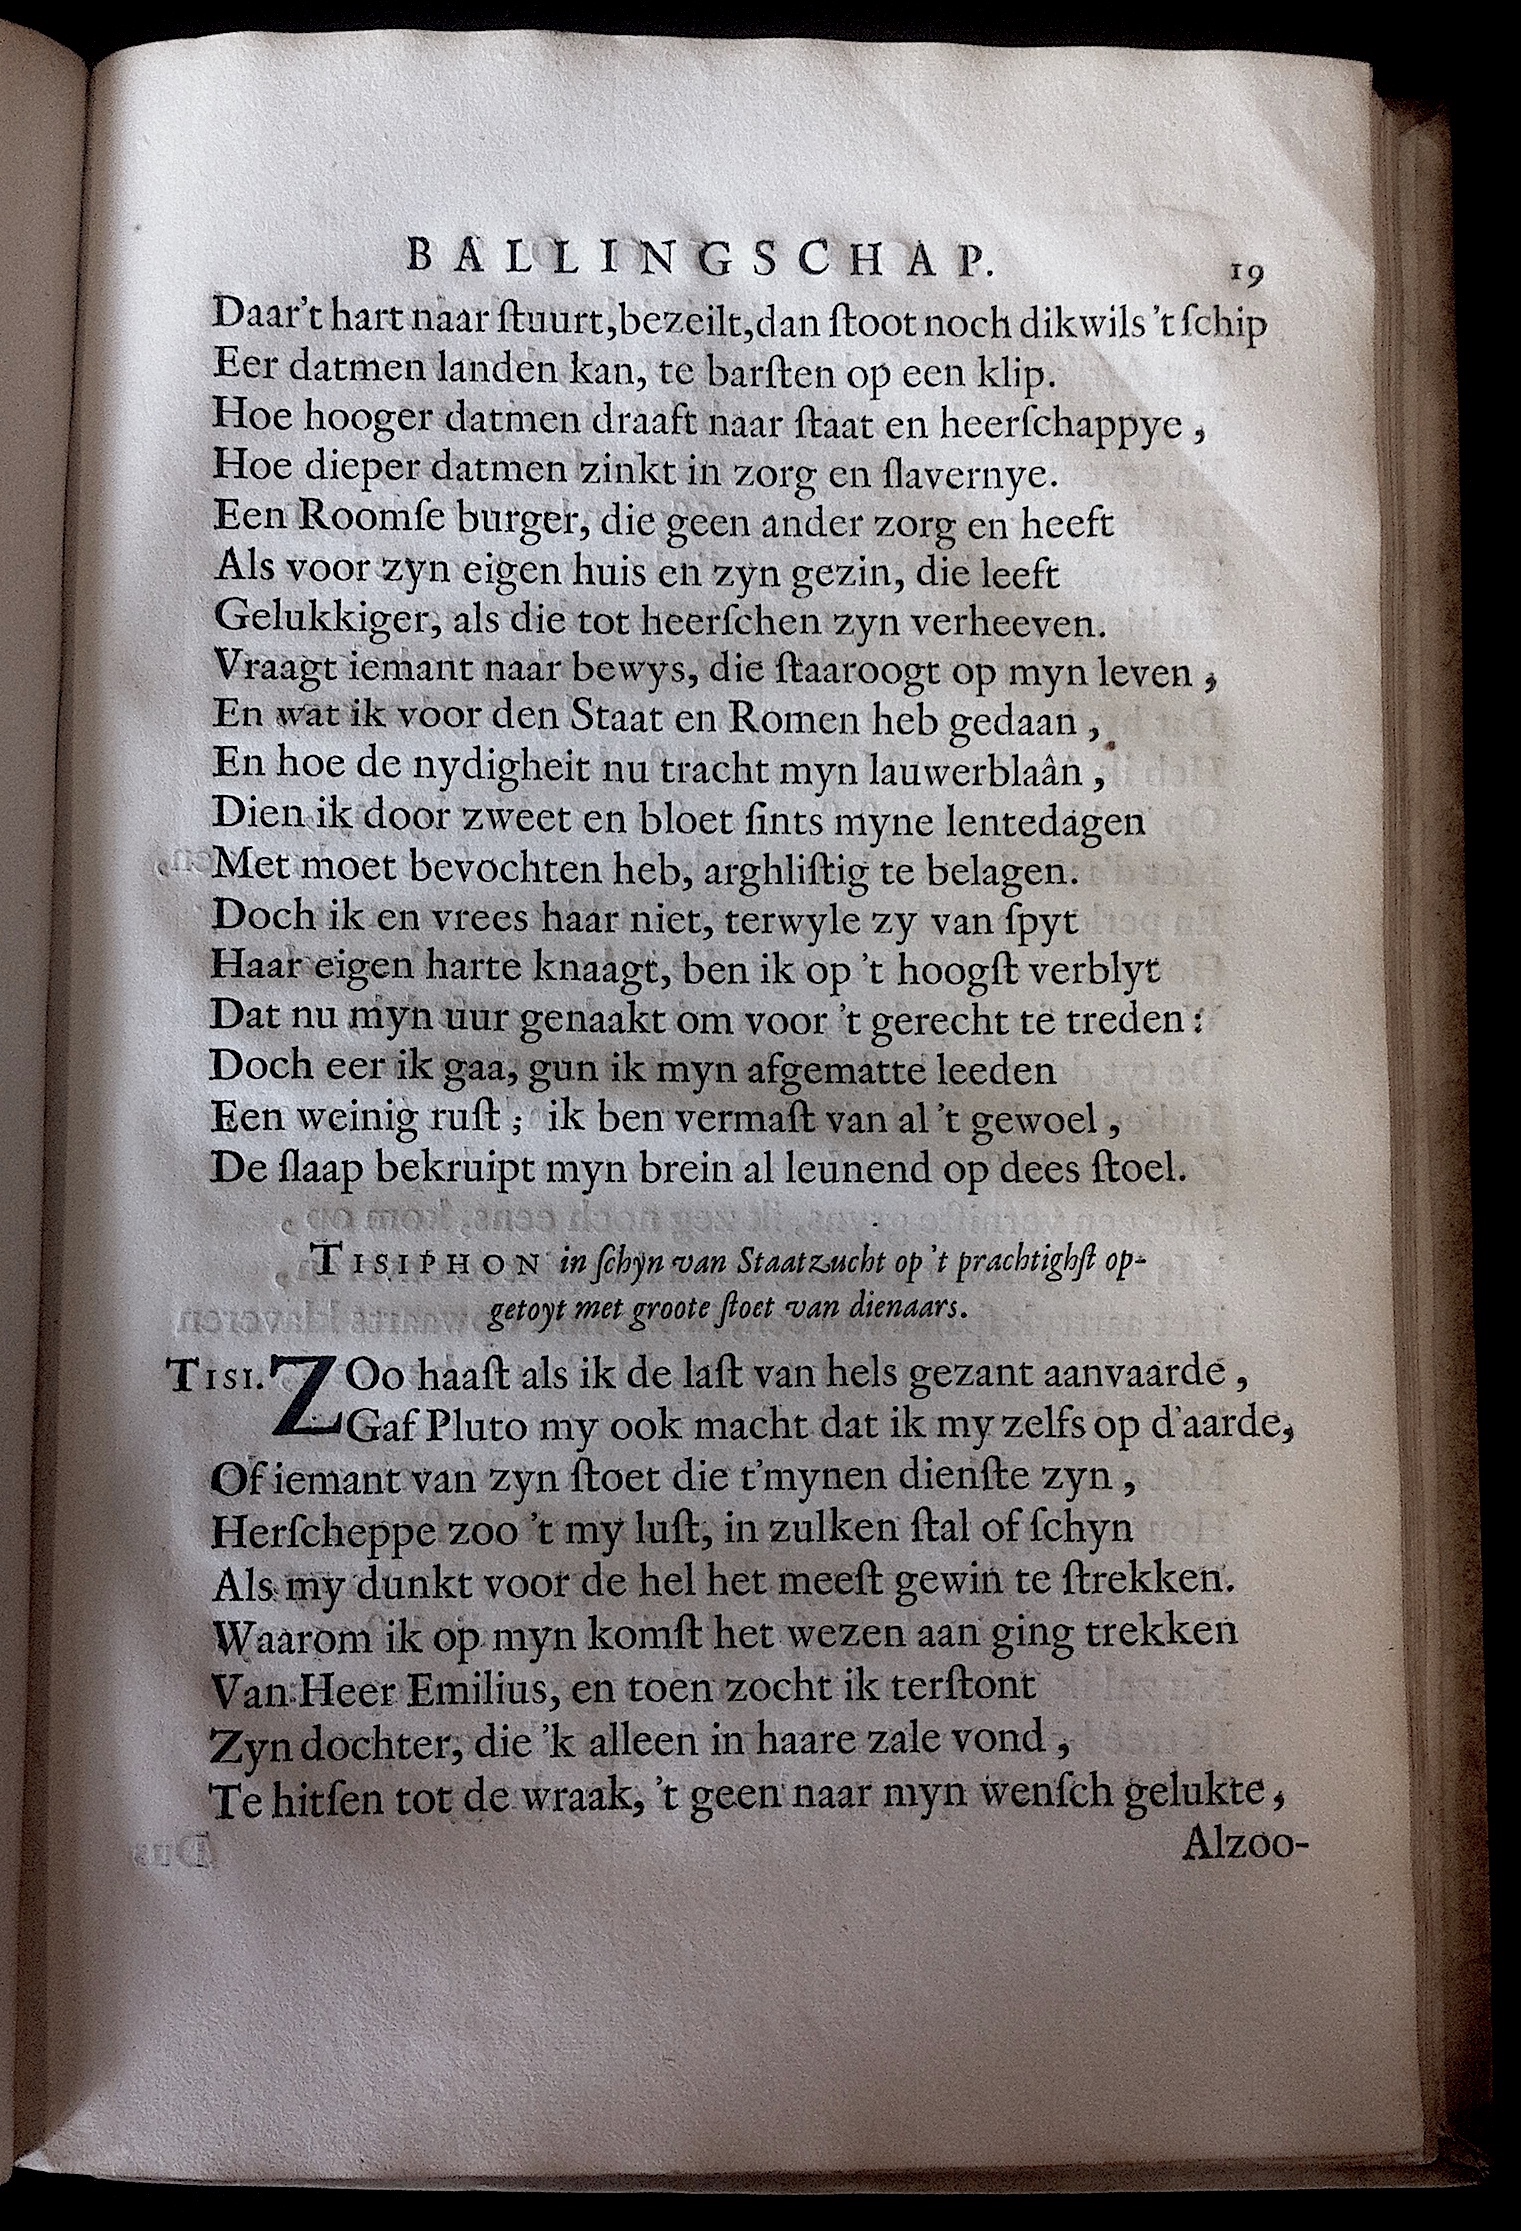 BoccardScipioFolio1658p19.jpg